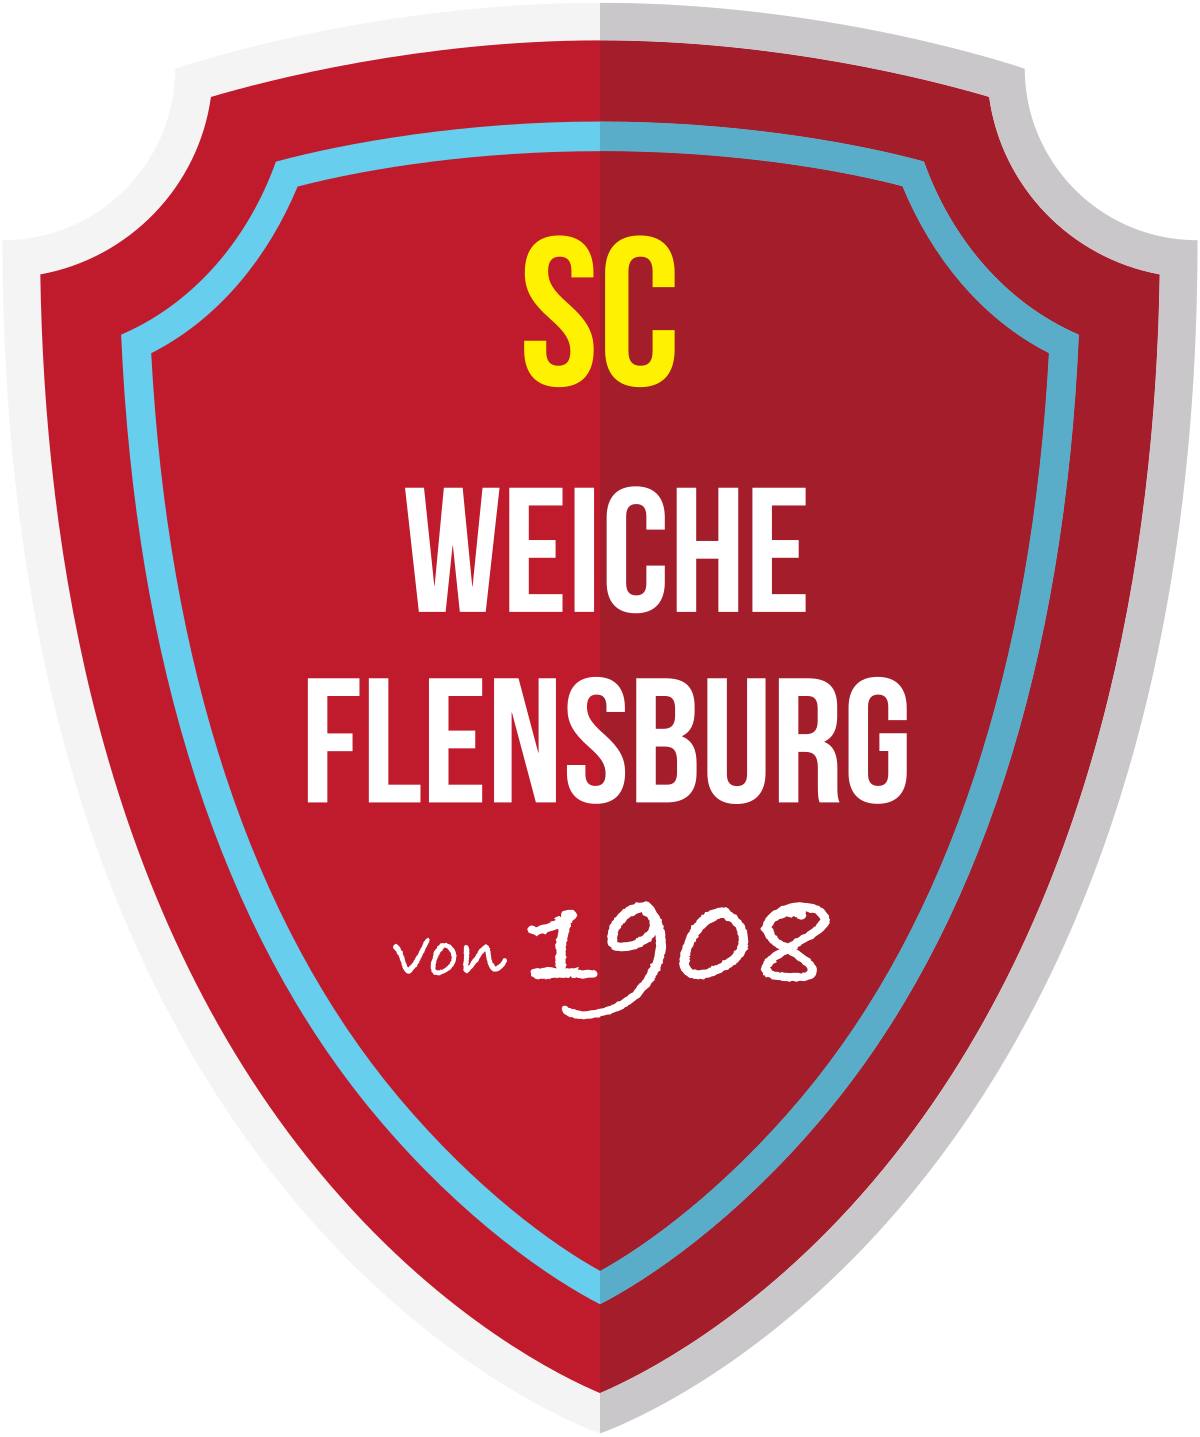 SC Weiche Flensburg 08 - Wikipedia